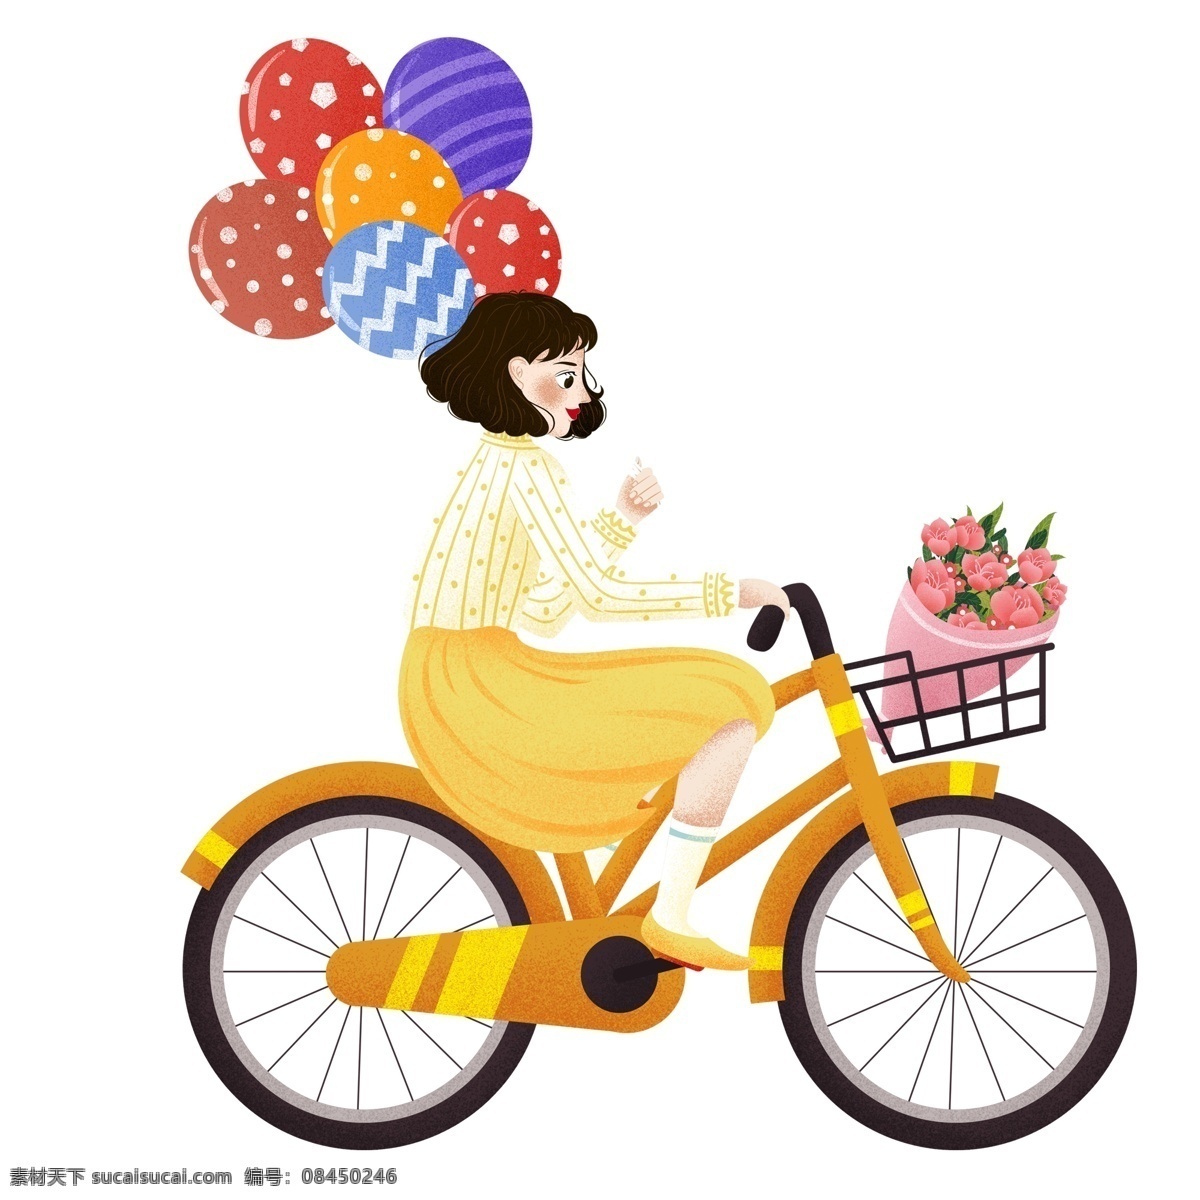 清新 绿色 出行 骑 自行车 出门 女孩 卡通 绿色出行 骑自行车 气球 鲜花 旅行 春游 人物 插画